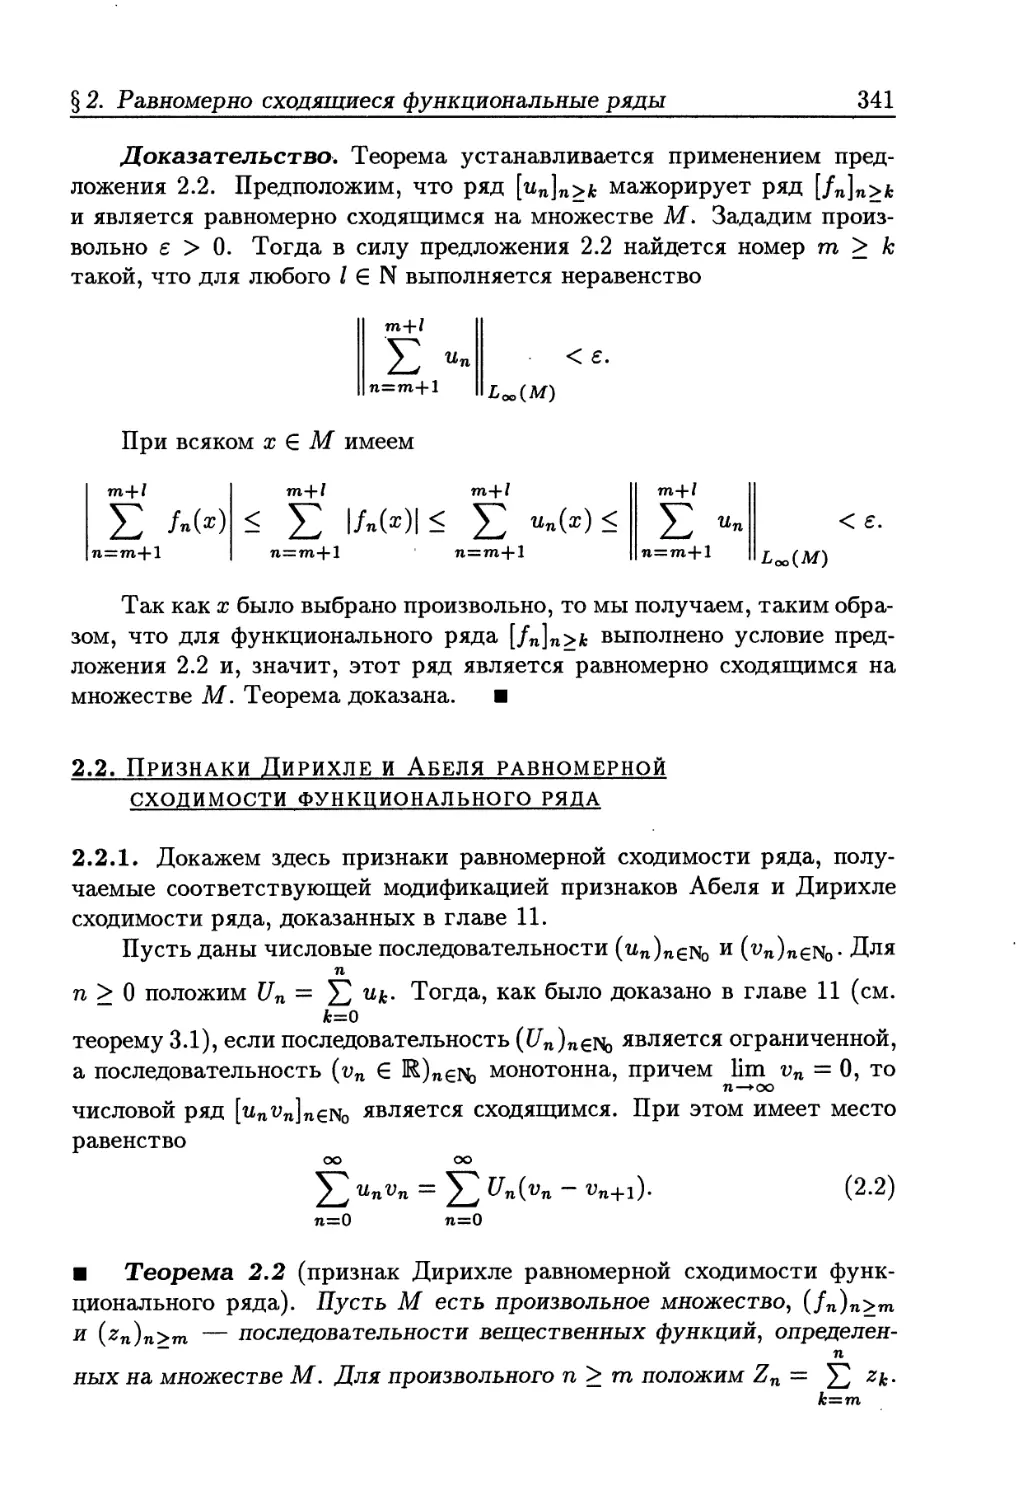 2.2. Признаки Дирихле и Абеля равномерной сходимости функционального ряда